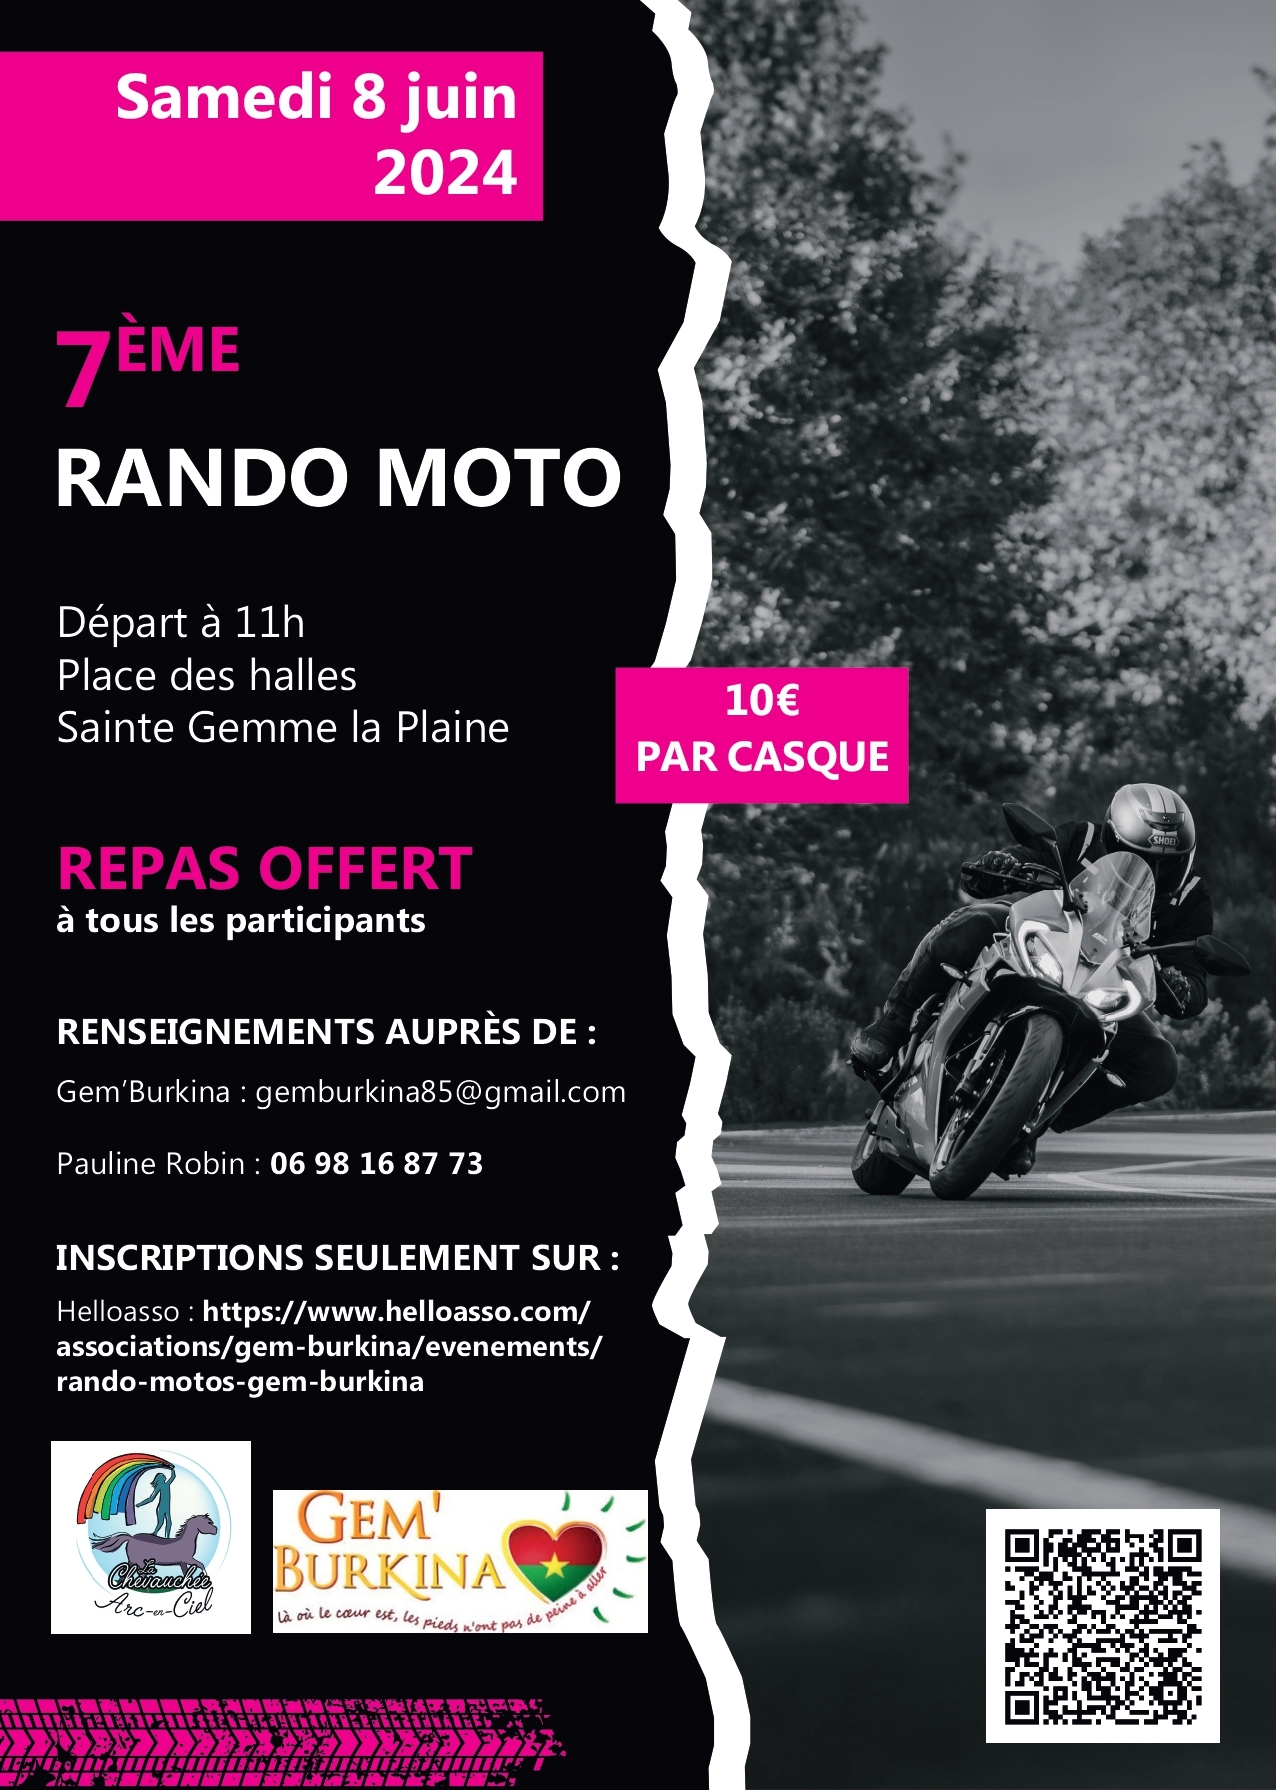 Rando Moto - Gem'Burkina